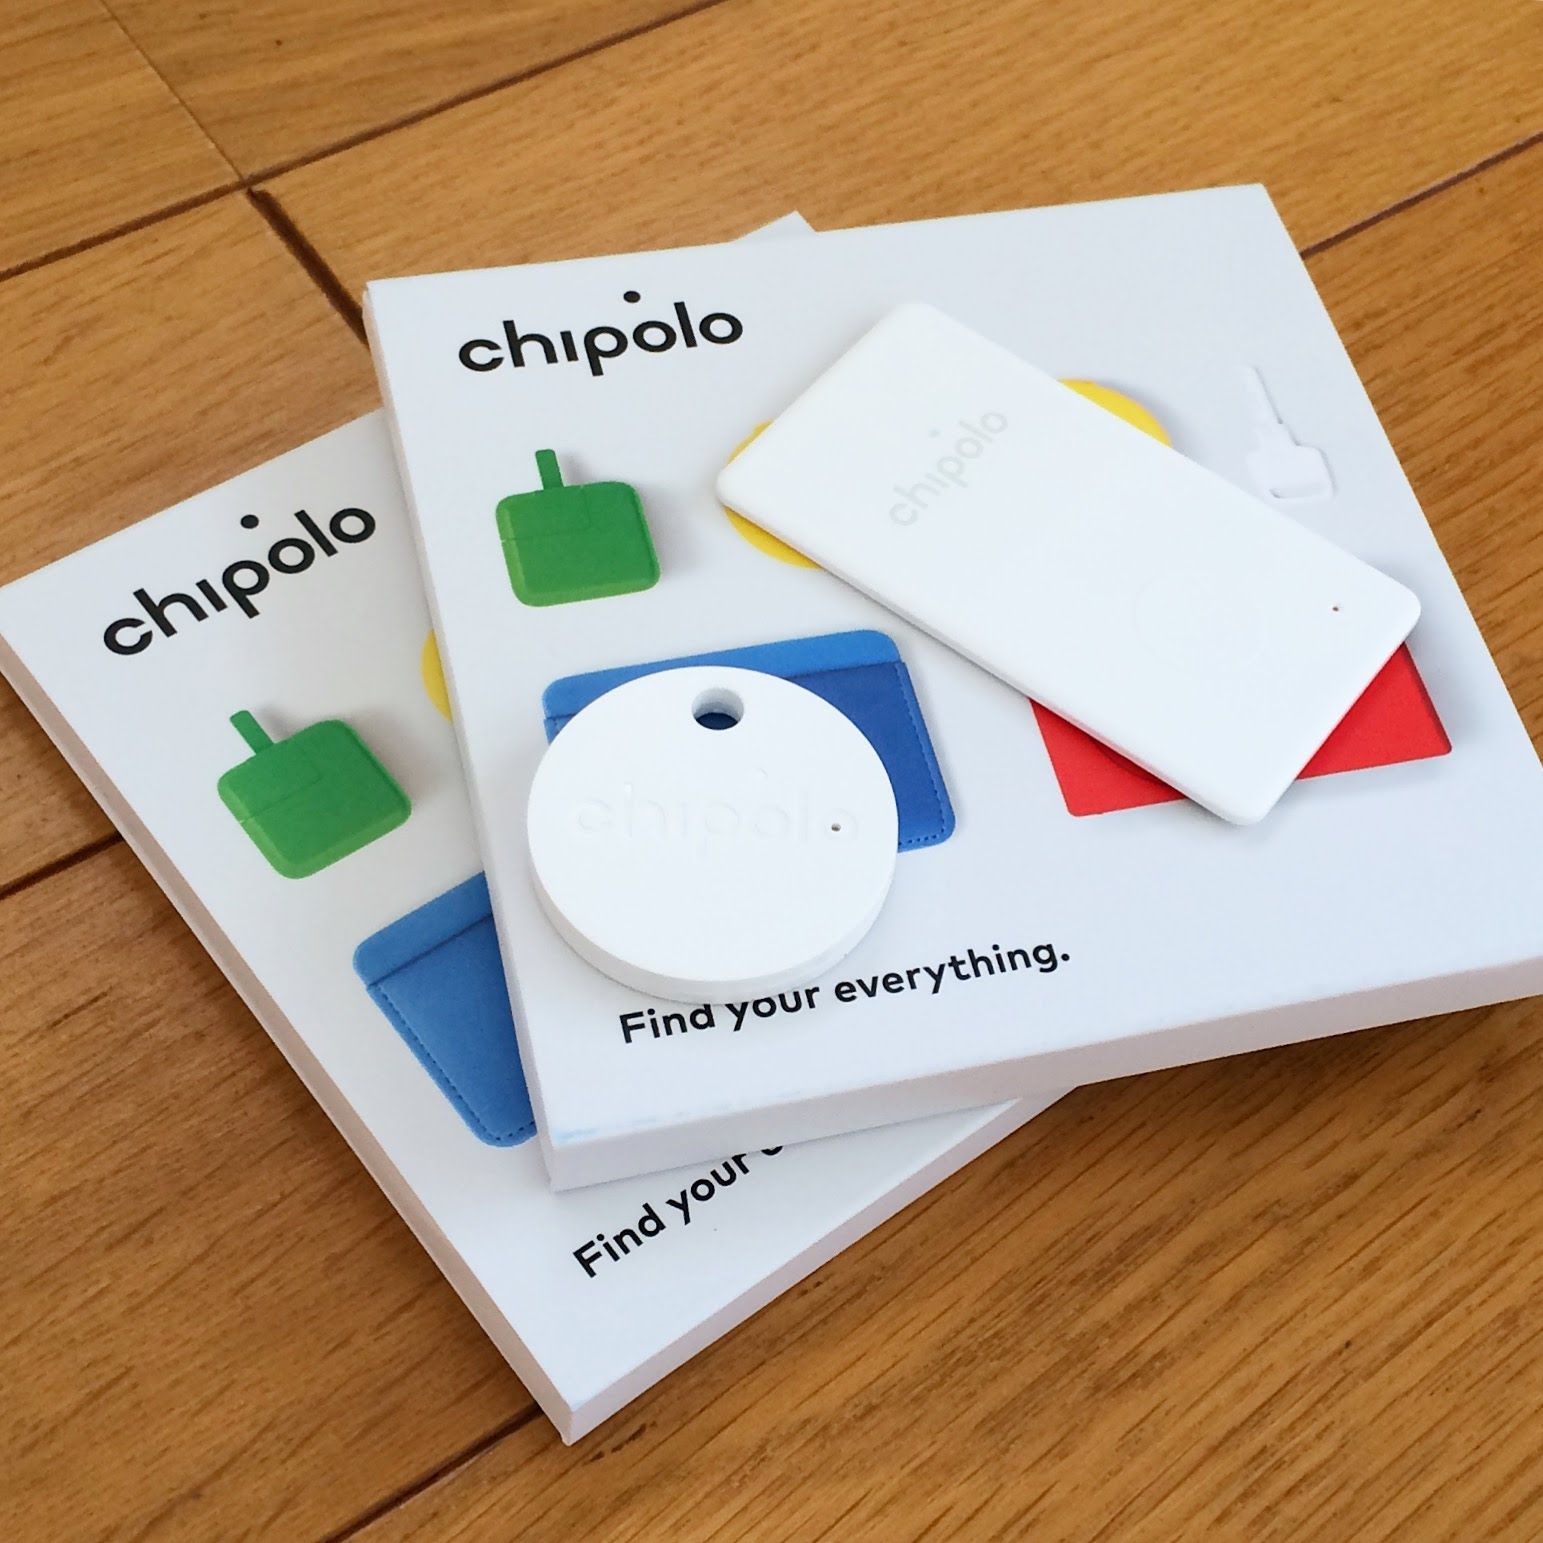 白くて丸いChipolo Classic、白くて四角いChipolo Card、そしてカラフルなデバイスがプリントされた化粧箱。